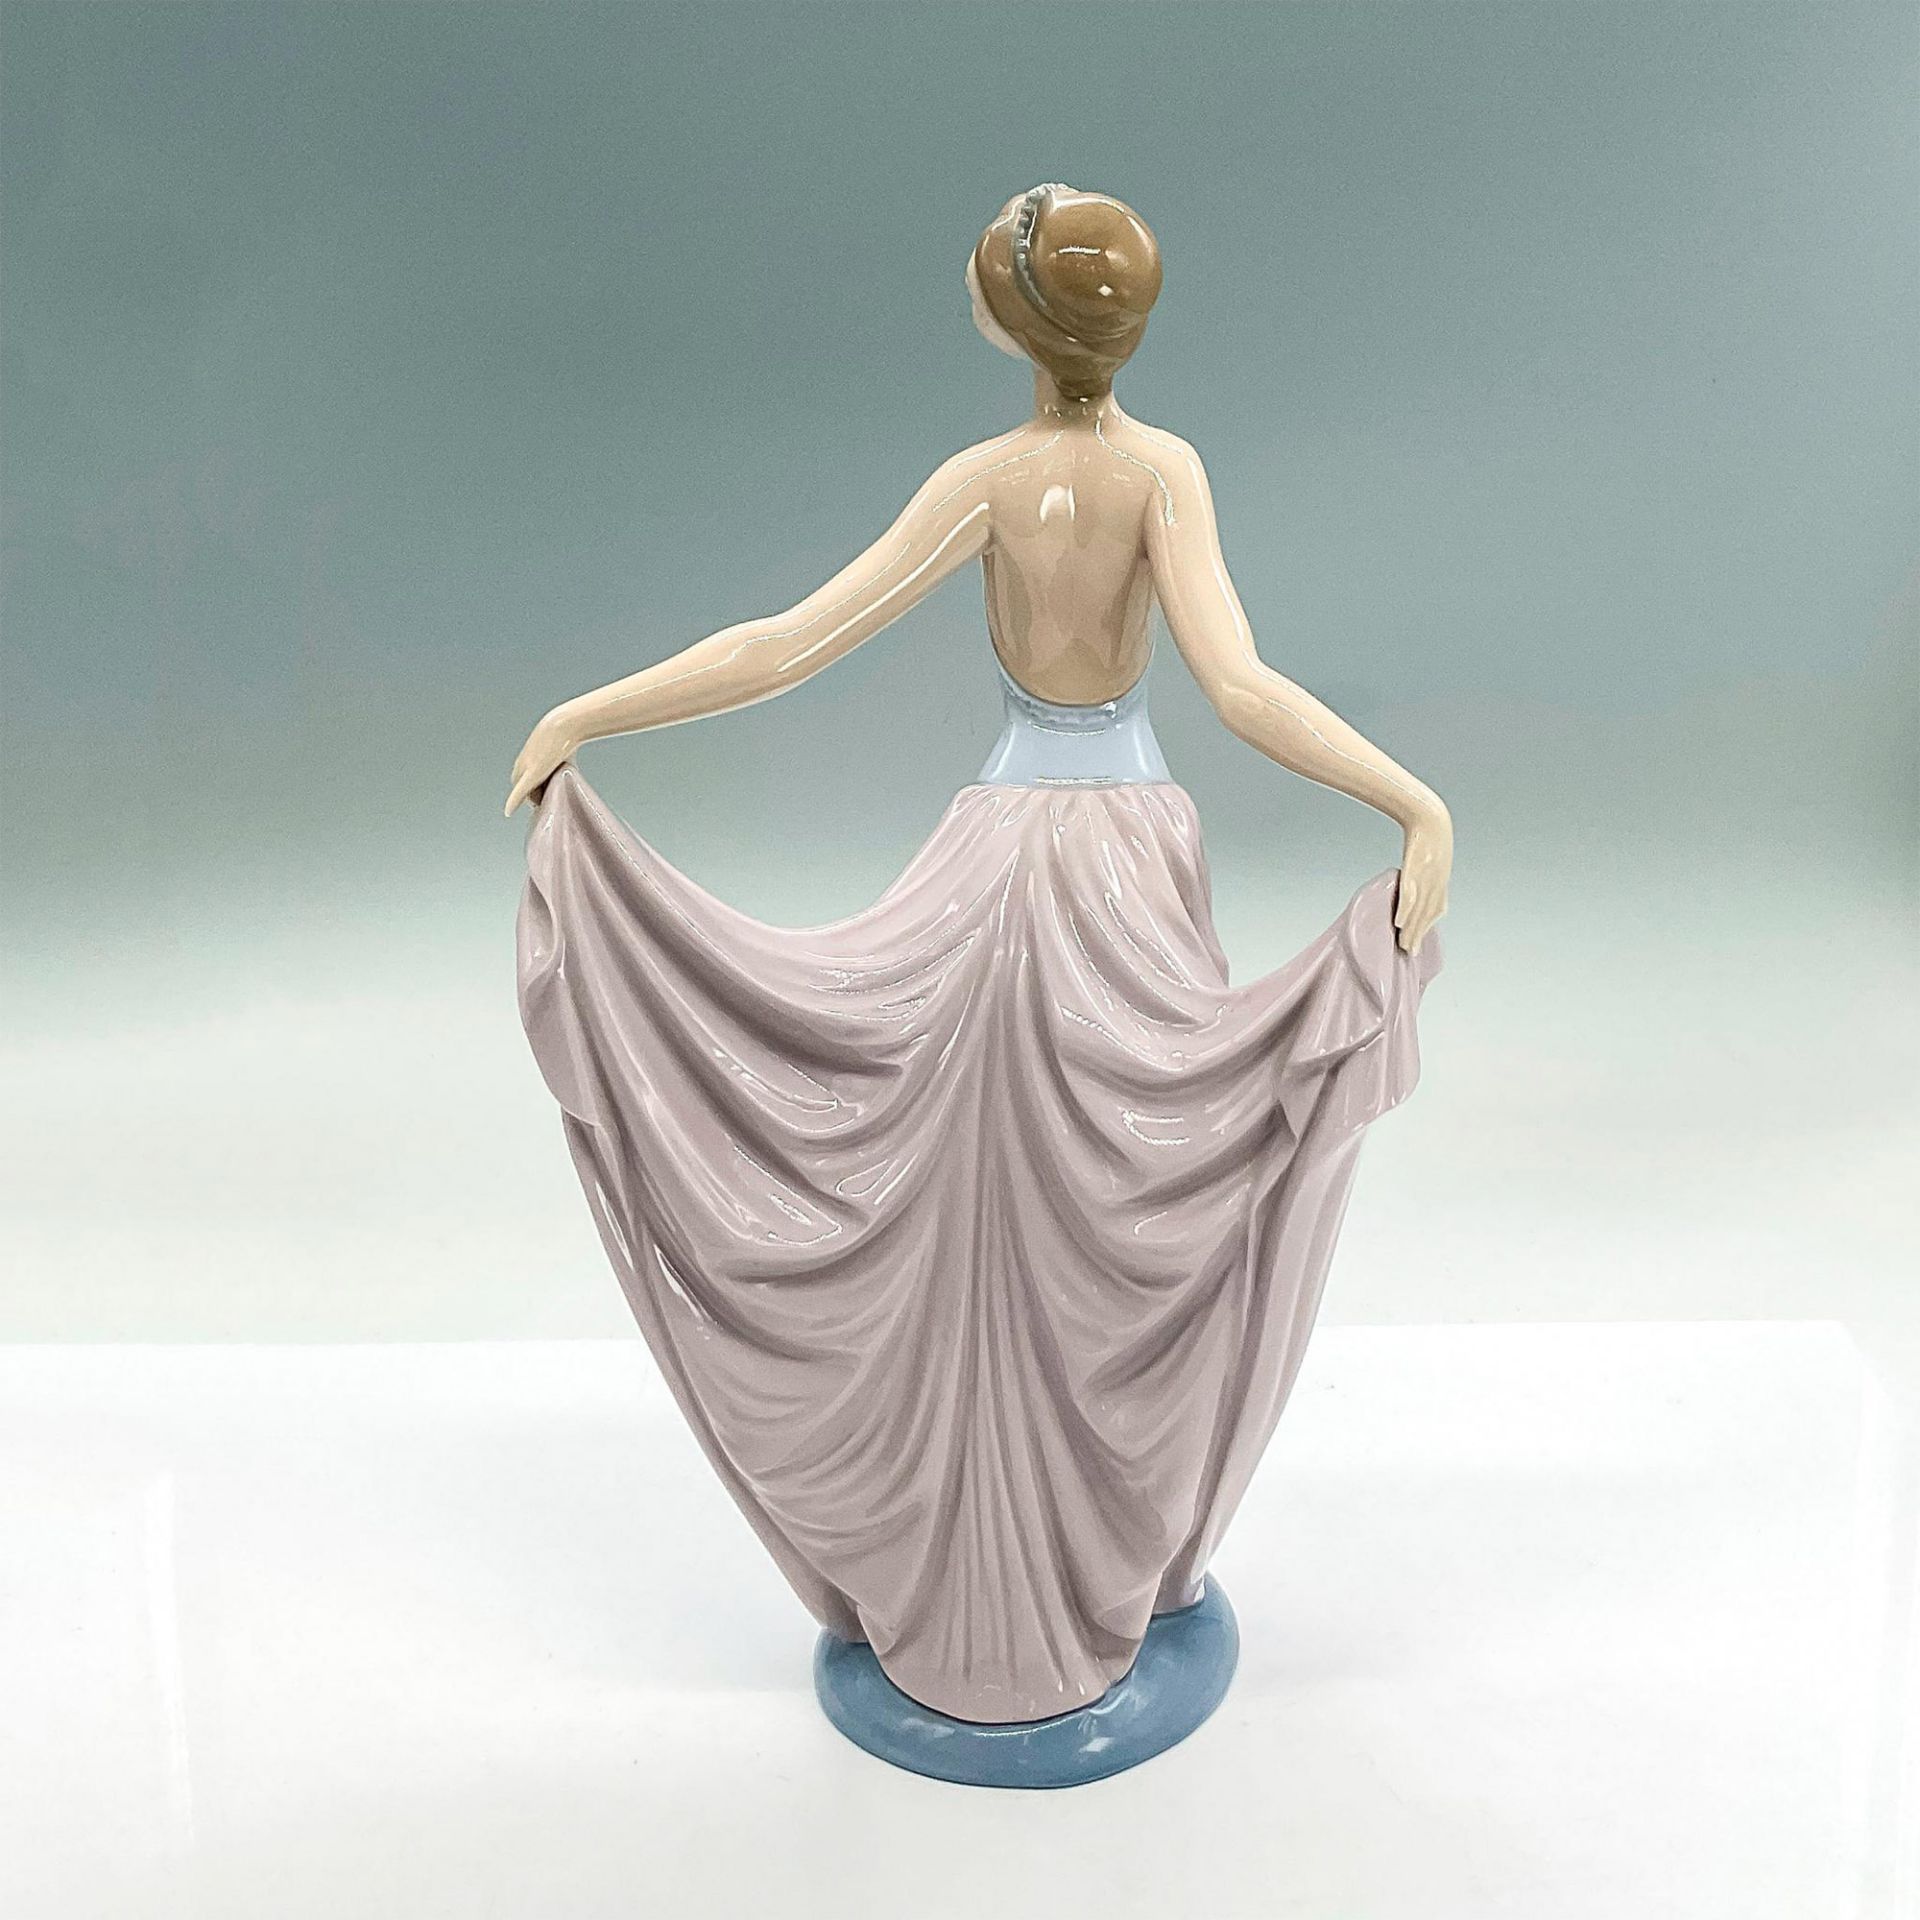 Dancer 1005050 - Lladro Porcelain Figurine - Image 2 of 4